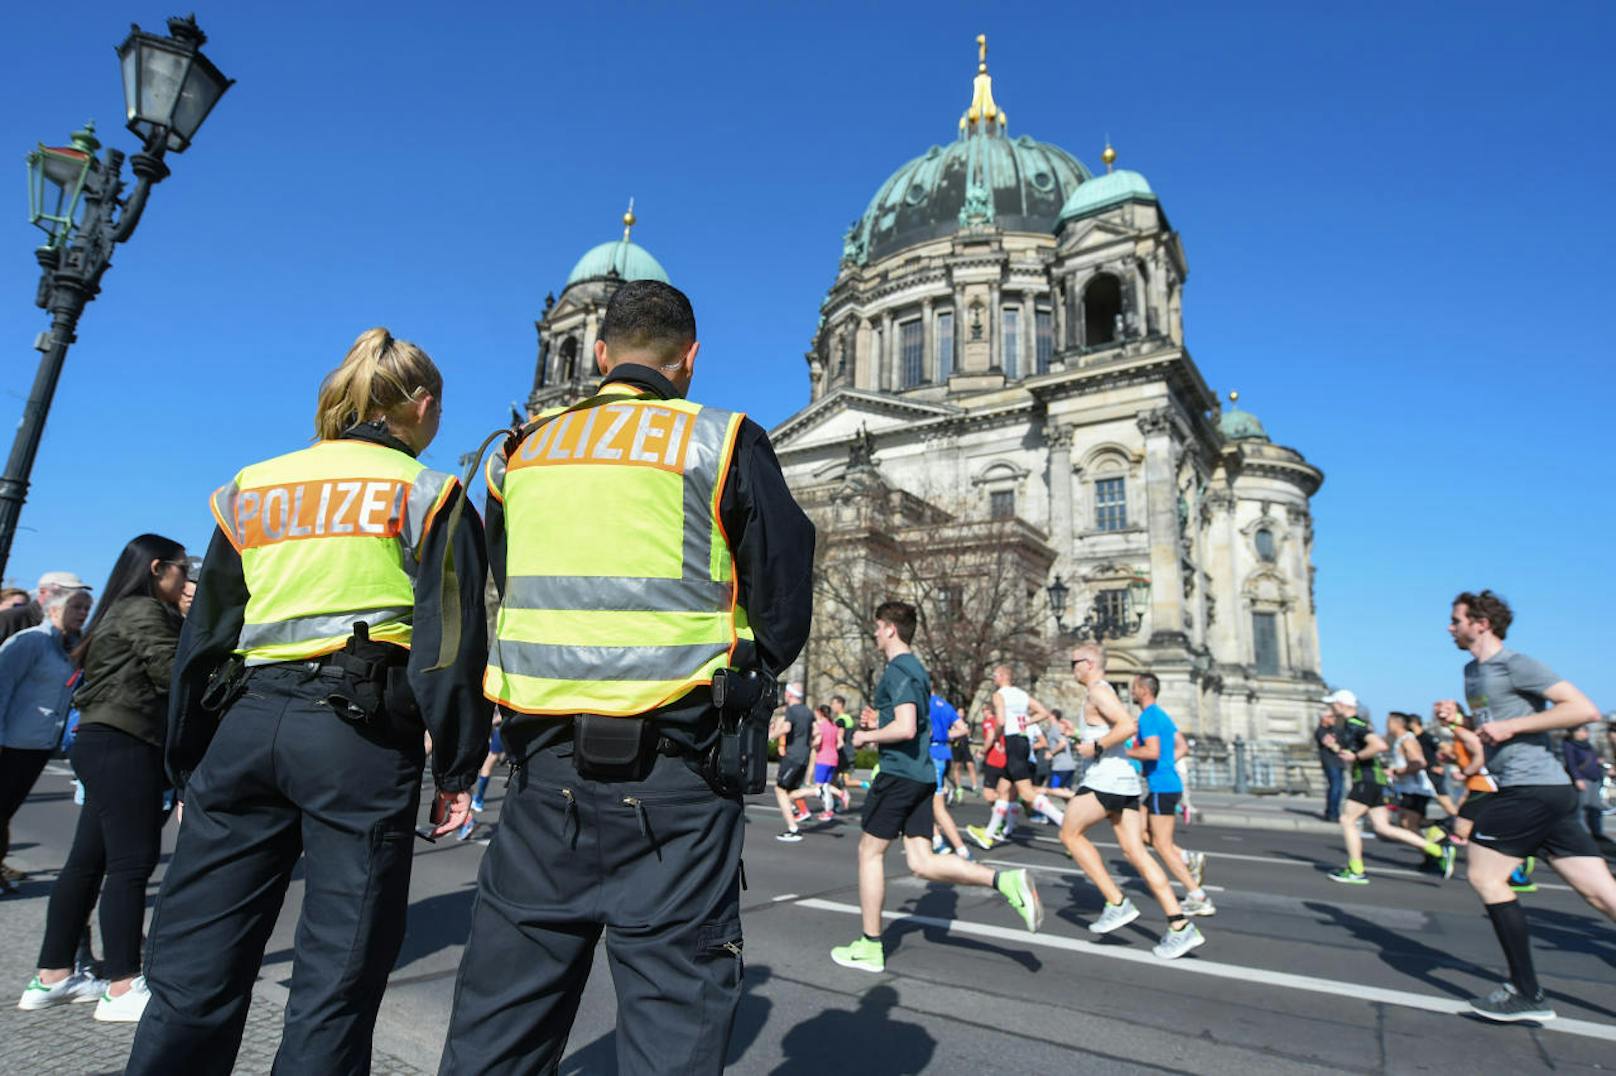 Spezialeinheiten der deutschen Polizei sollen einen Terroranschlag auf den Berliner Halbmarathon verhindert haben, der am Sonntag (8. April) Tausende Menschen in der deutsche Hauptstadt begeisterte.